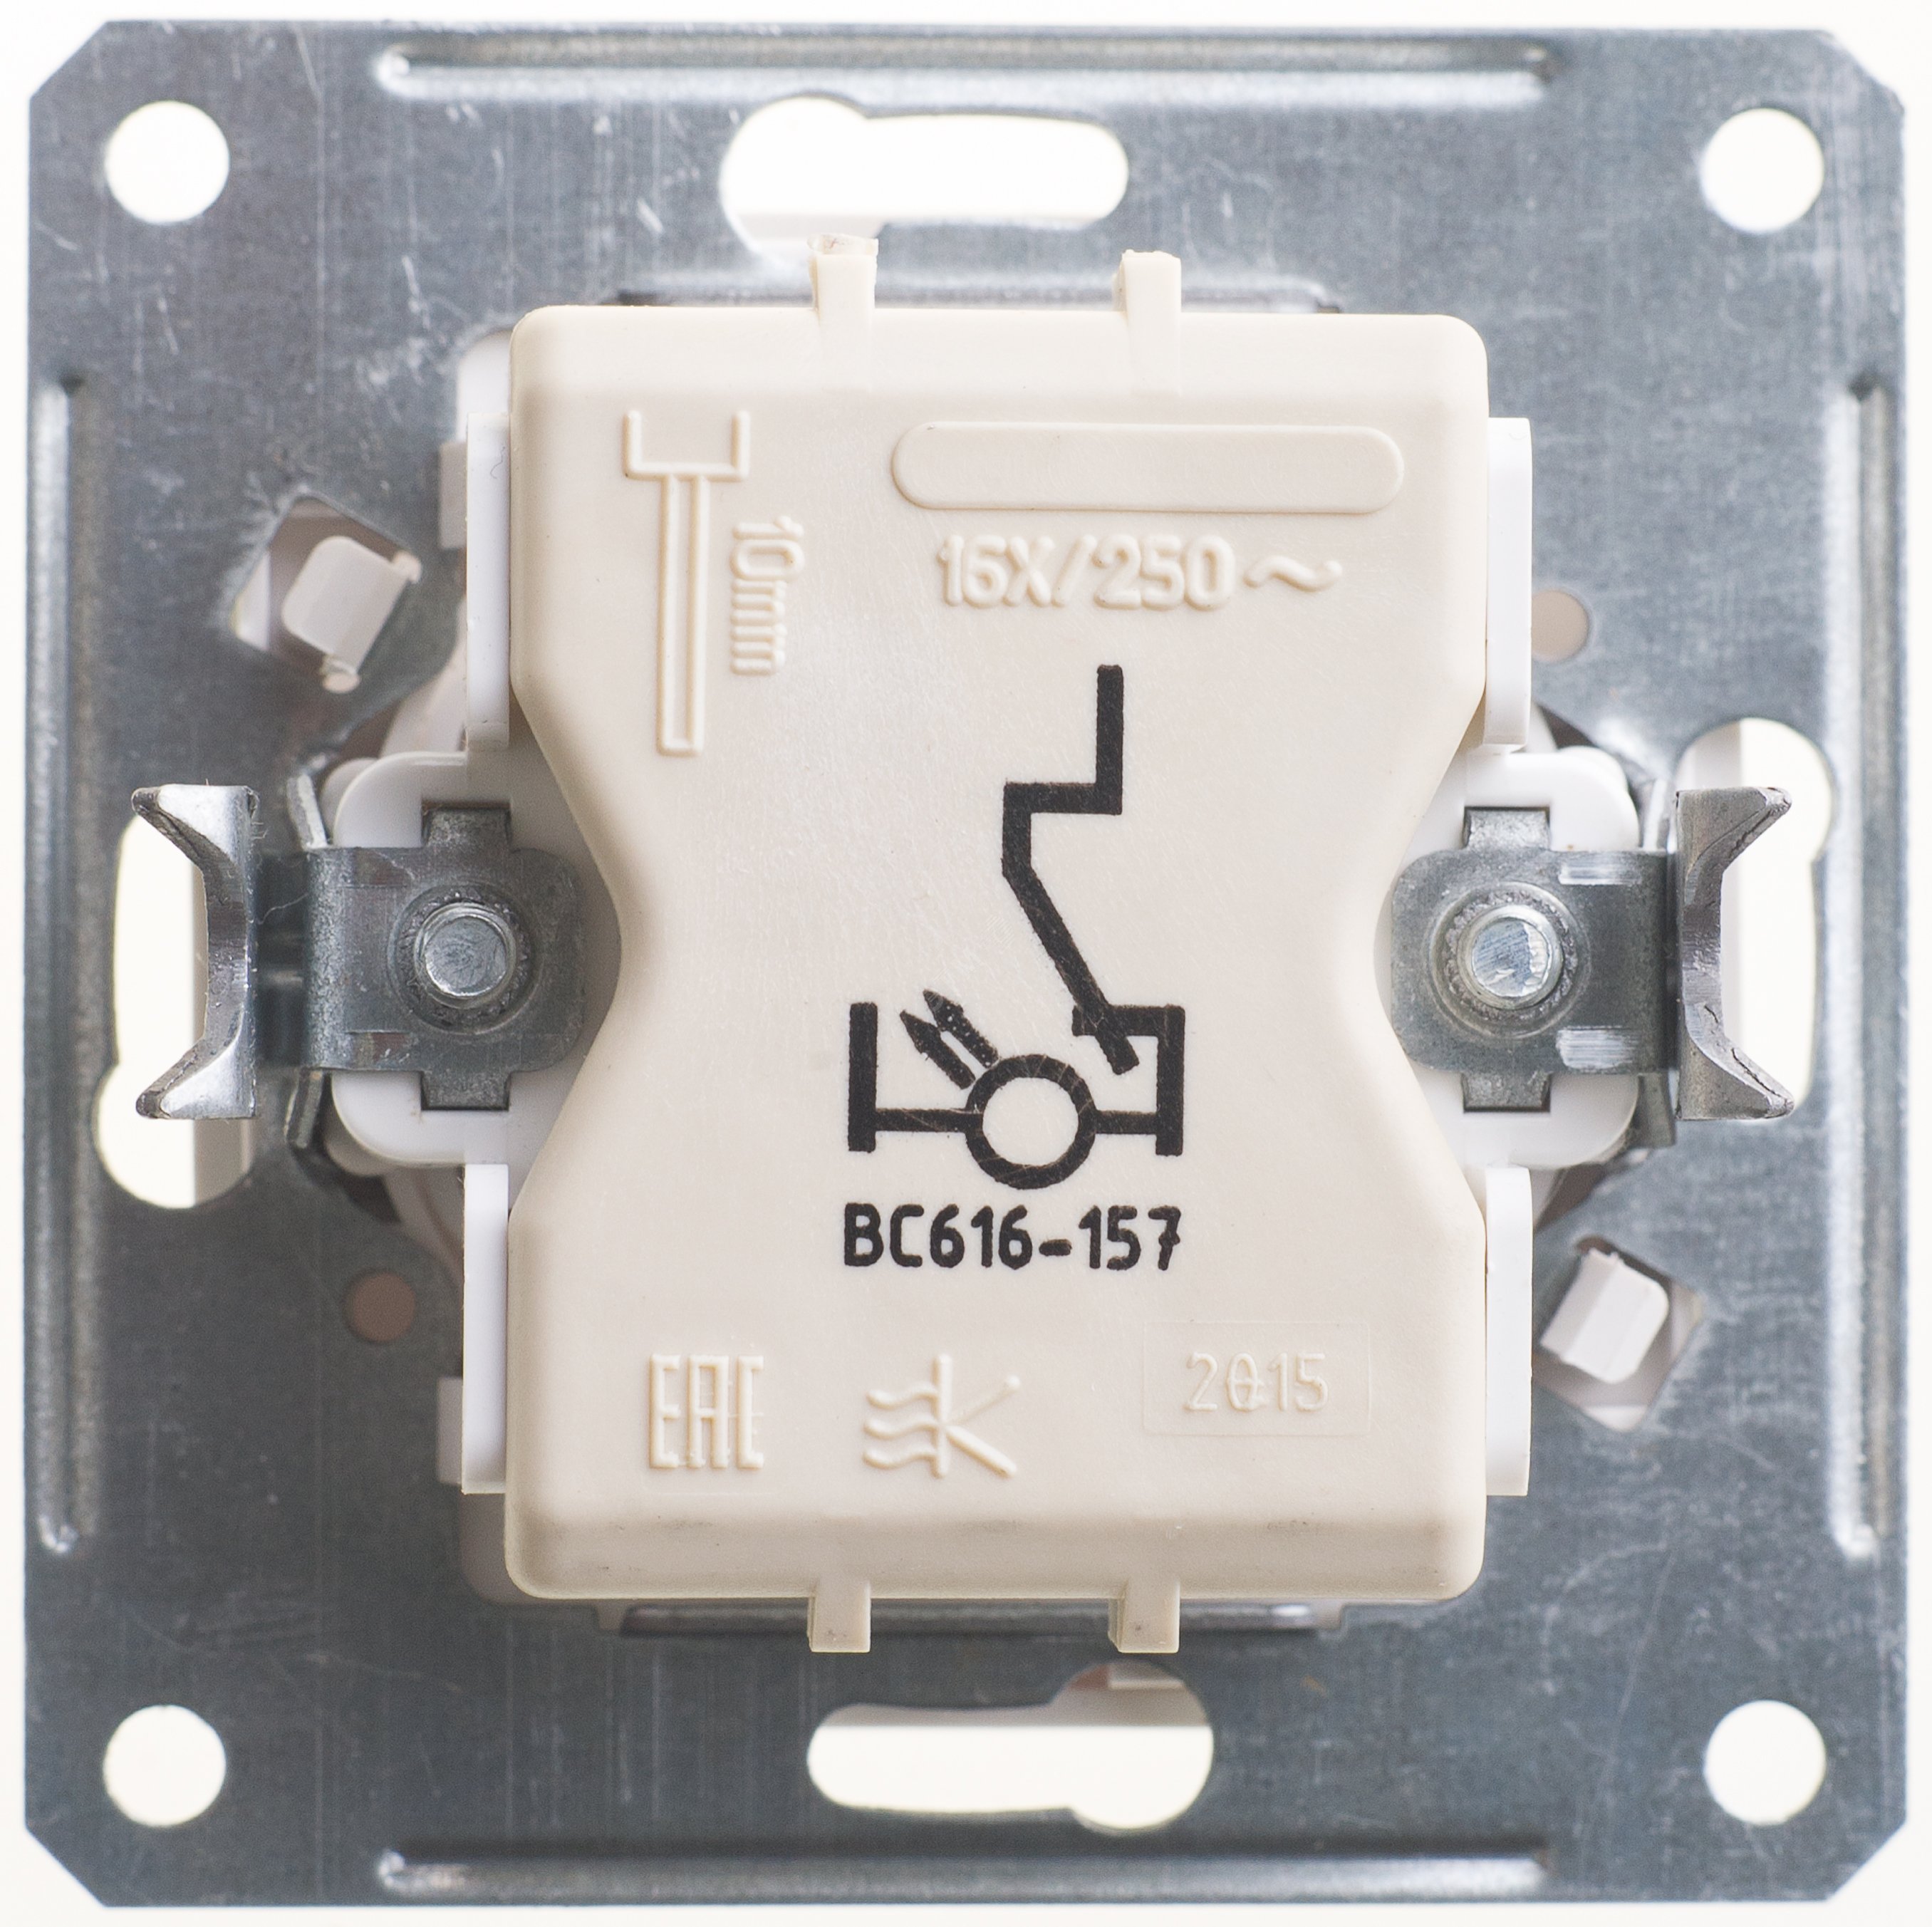 W59 Переключатель скрытый без рамки одноклавишный с индикацией белый VS616-157-1-86 Schneider Electric